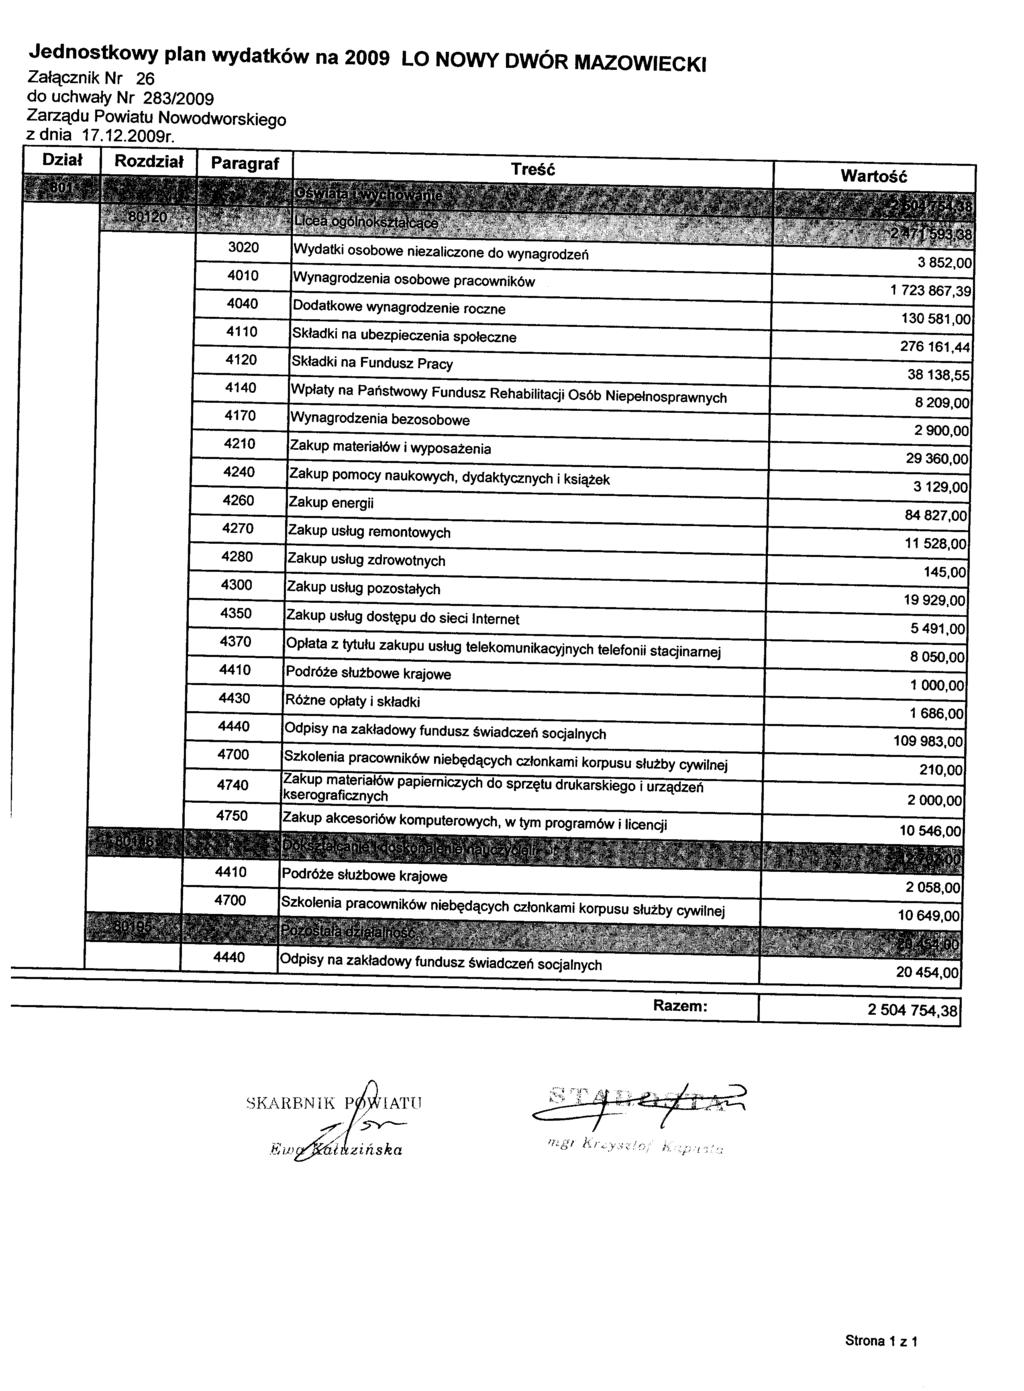 Jednostkowy plan wydatków na 2009 LO NOWY DWÓR MAZOWIECKI Załącznik Nr 26 z dnia 17. 12.2009r.